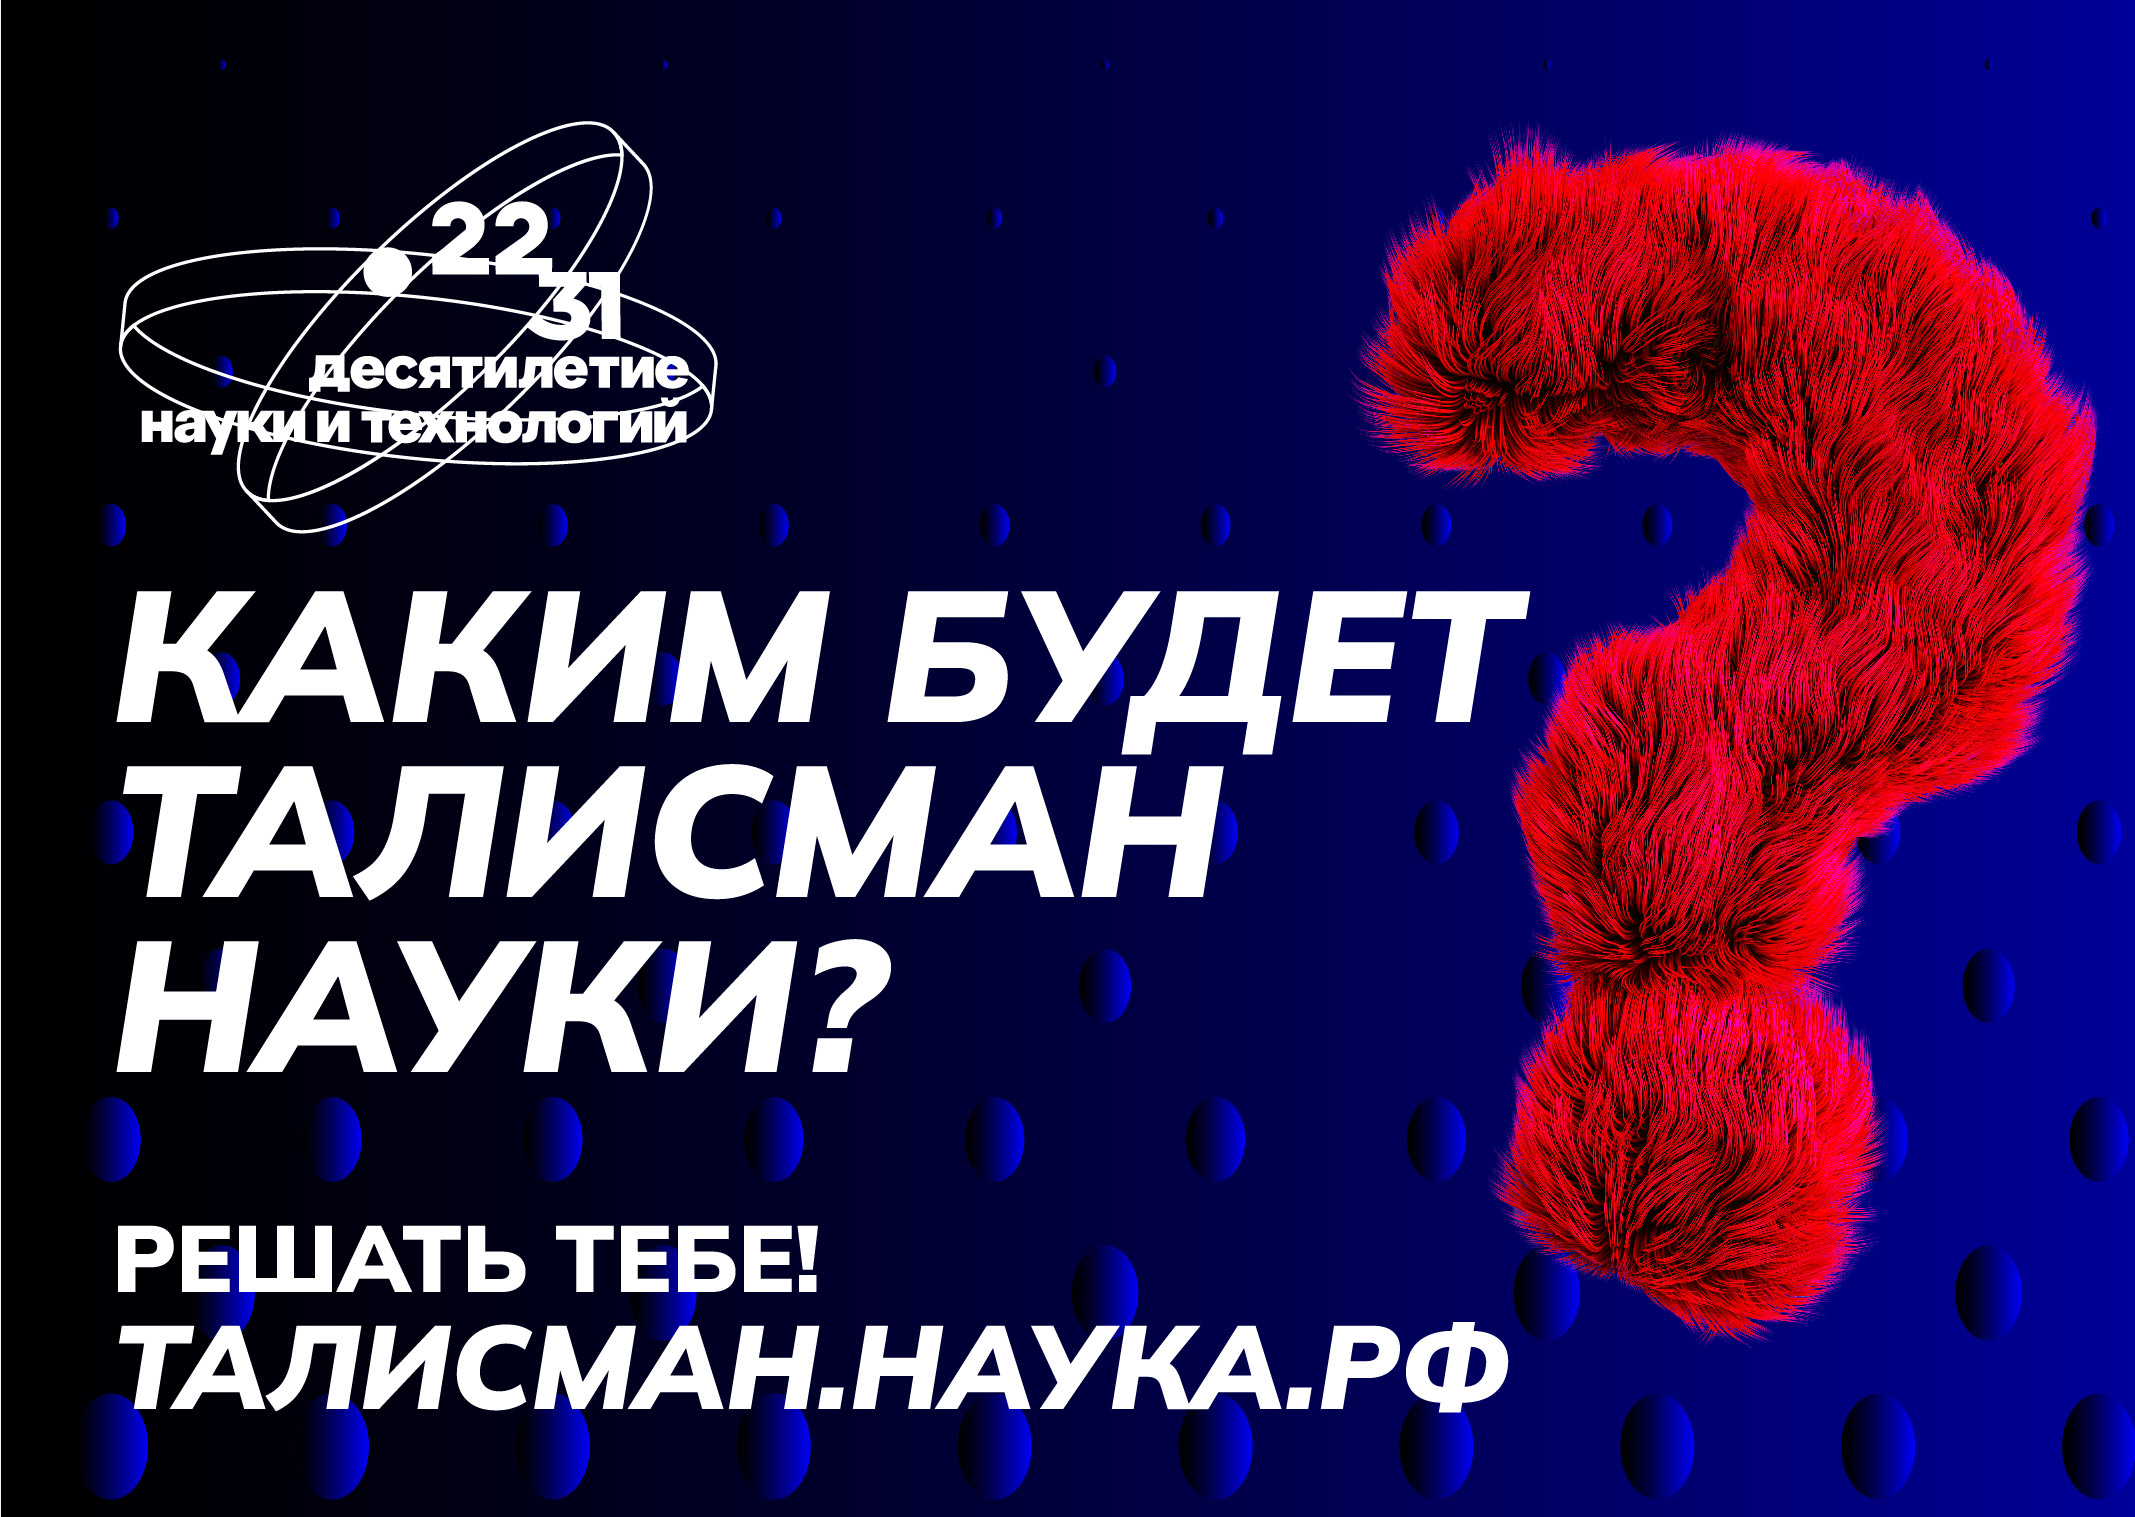 Федеральный конкурс на определение Талисмана Десятилетия науки и технологий.